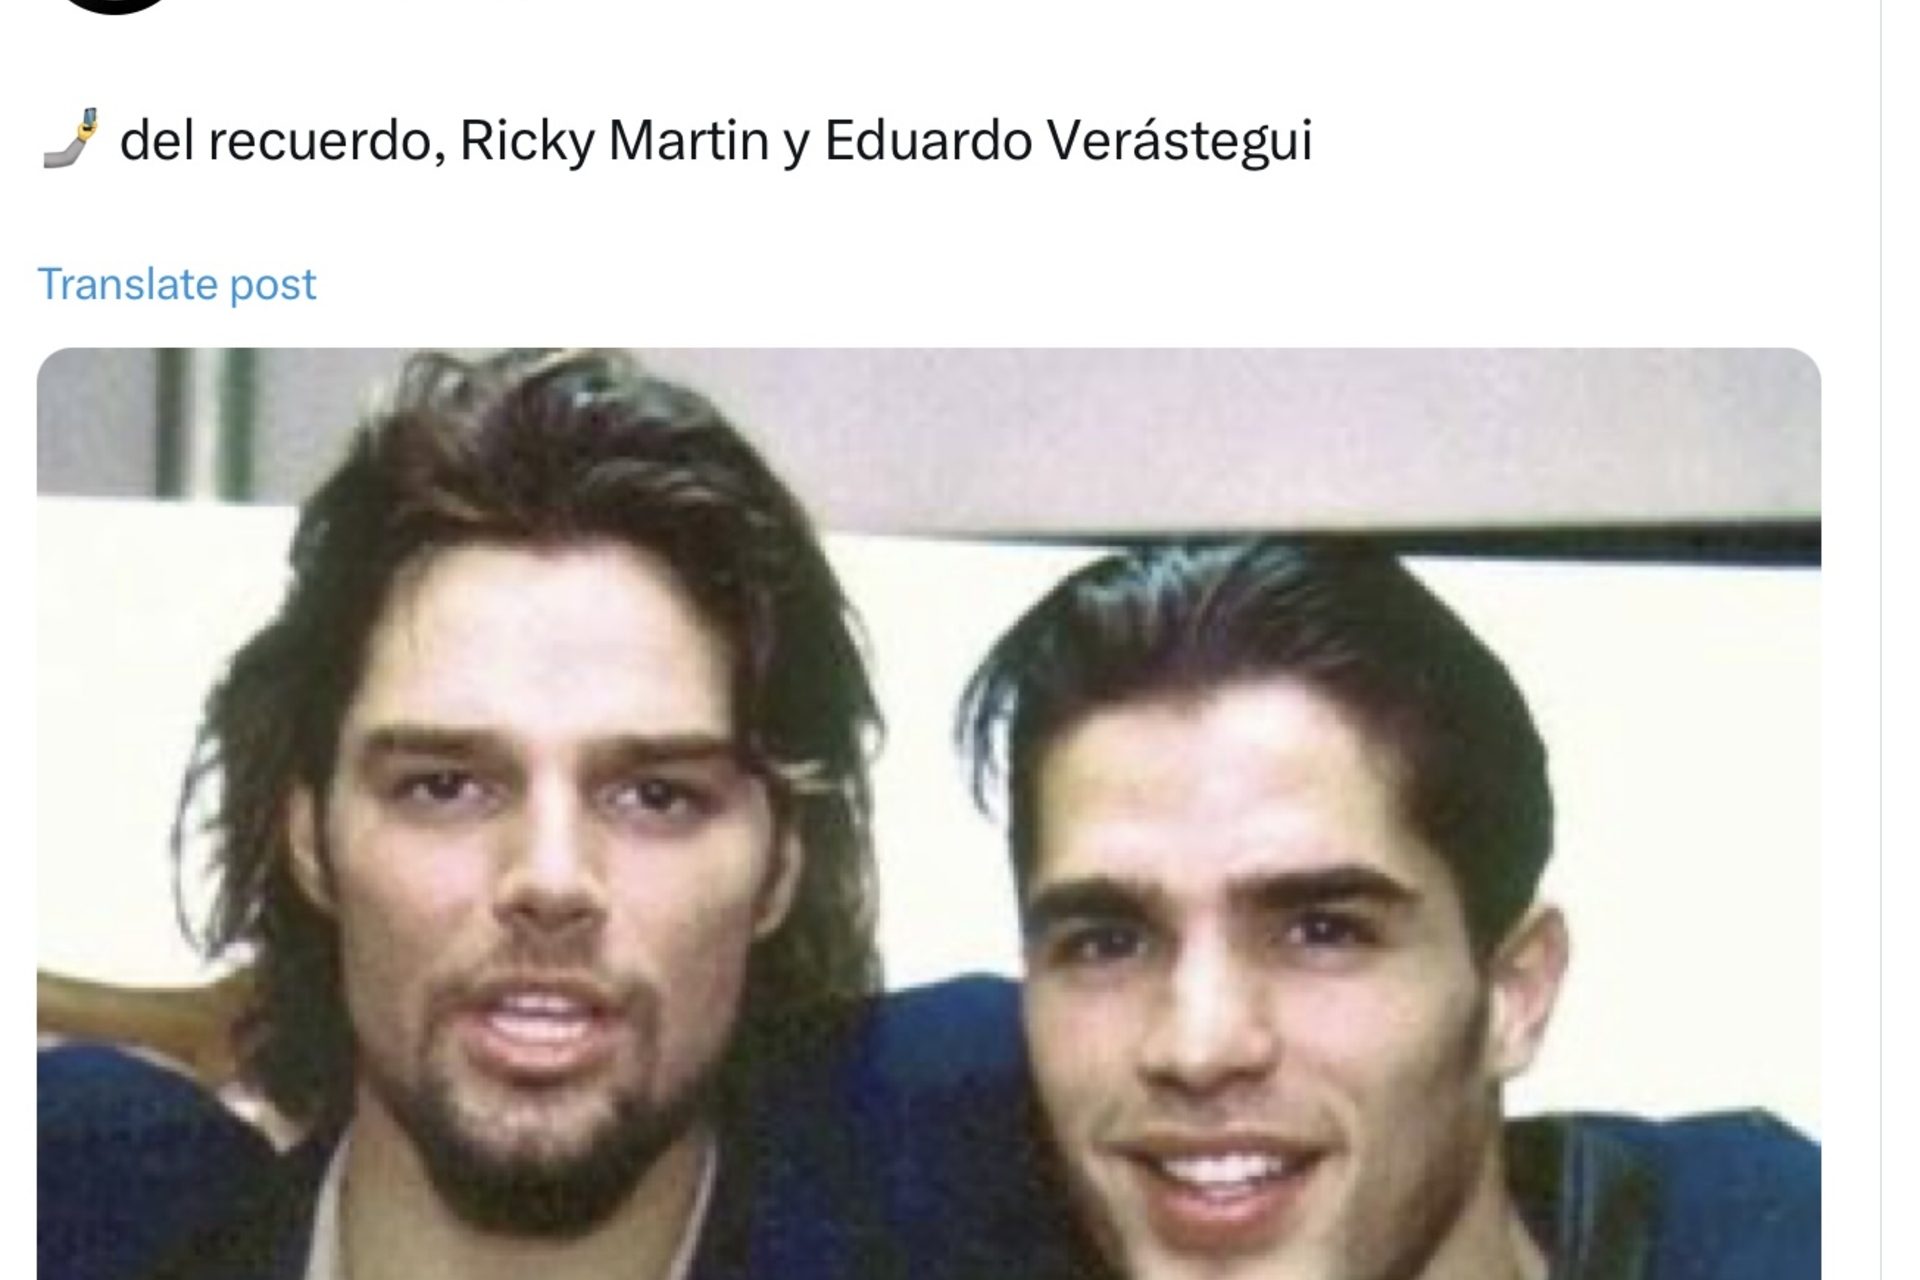 Supuesta relación romántica con Ricky Martin según prensa mexicana